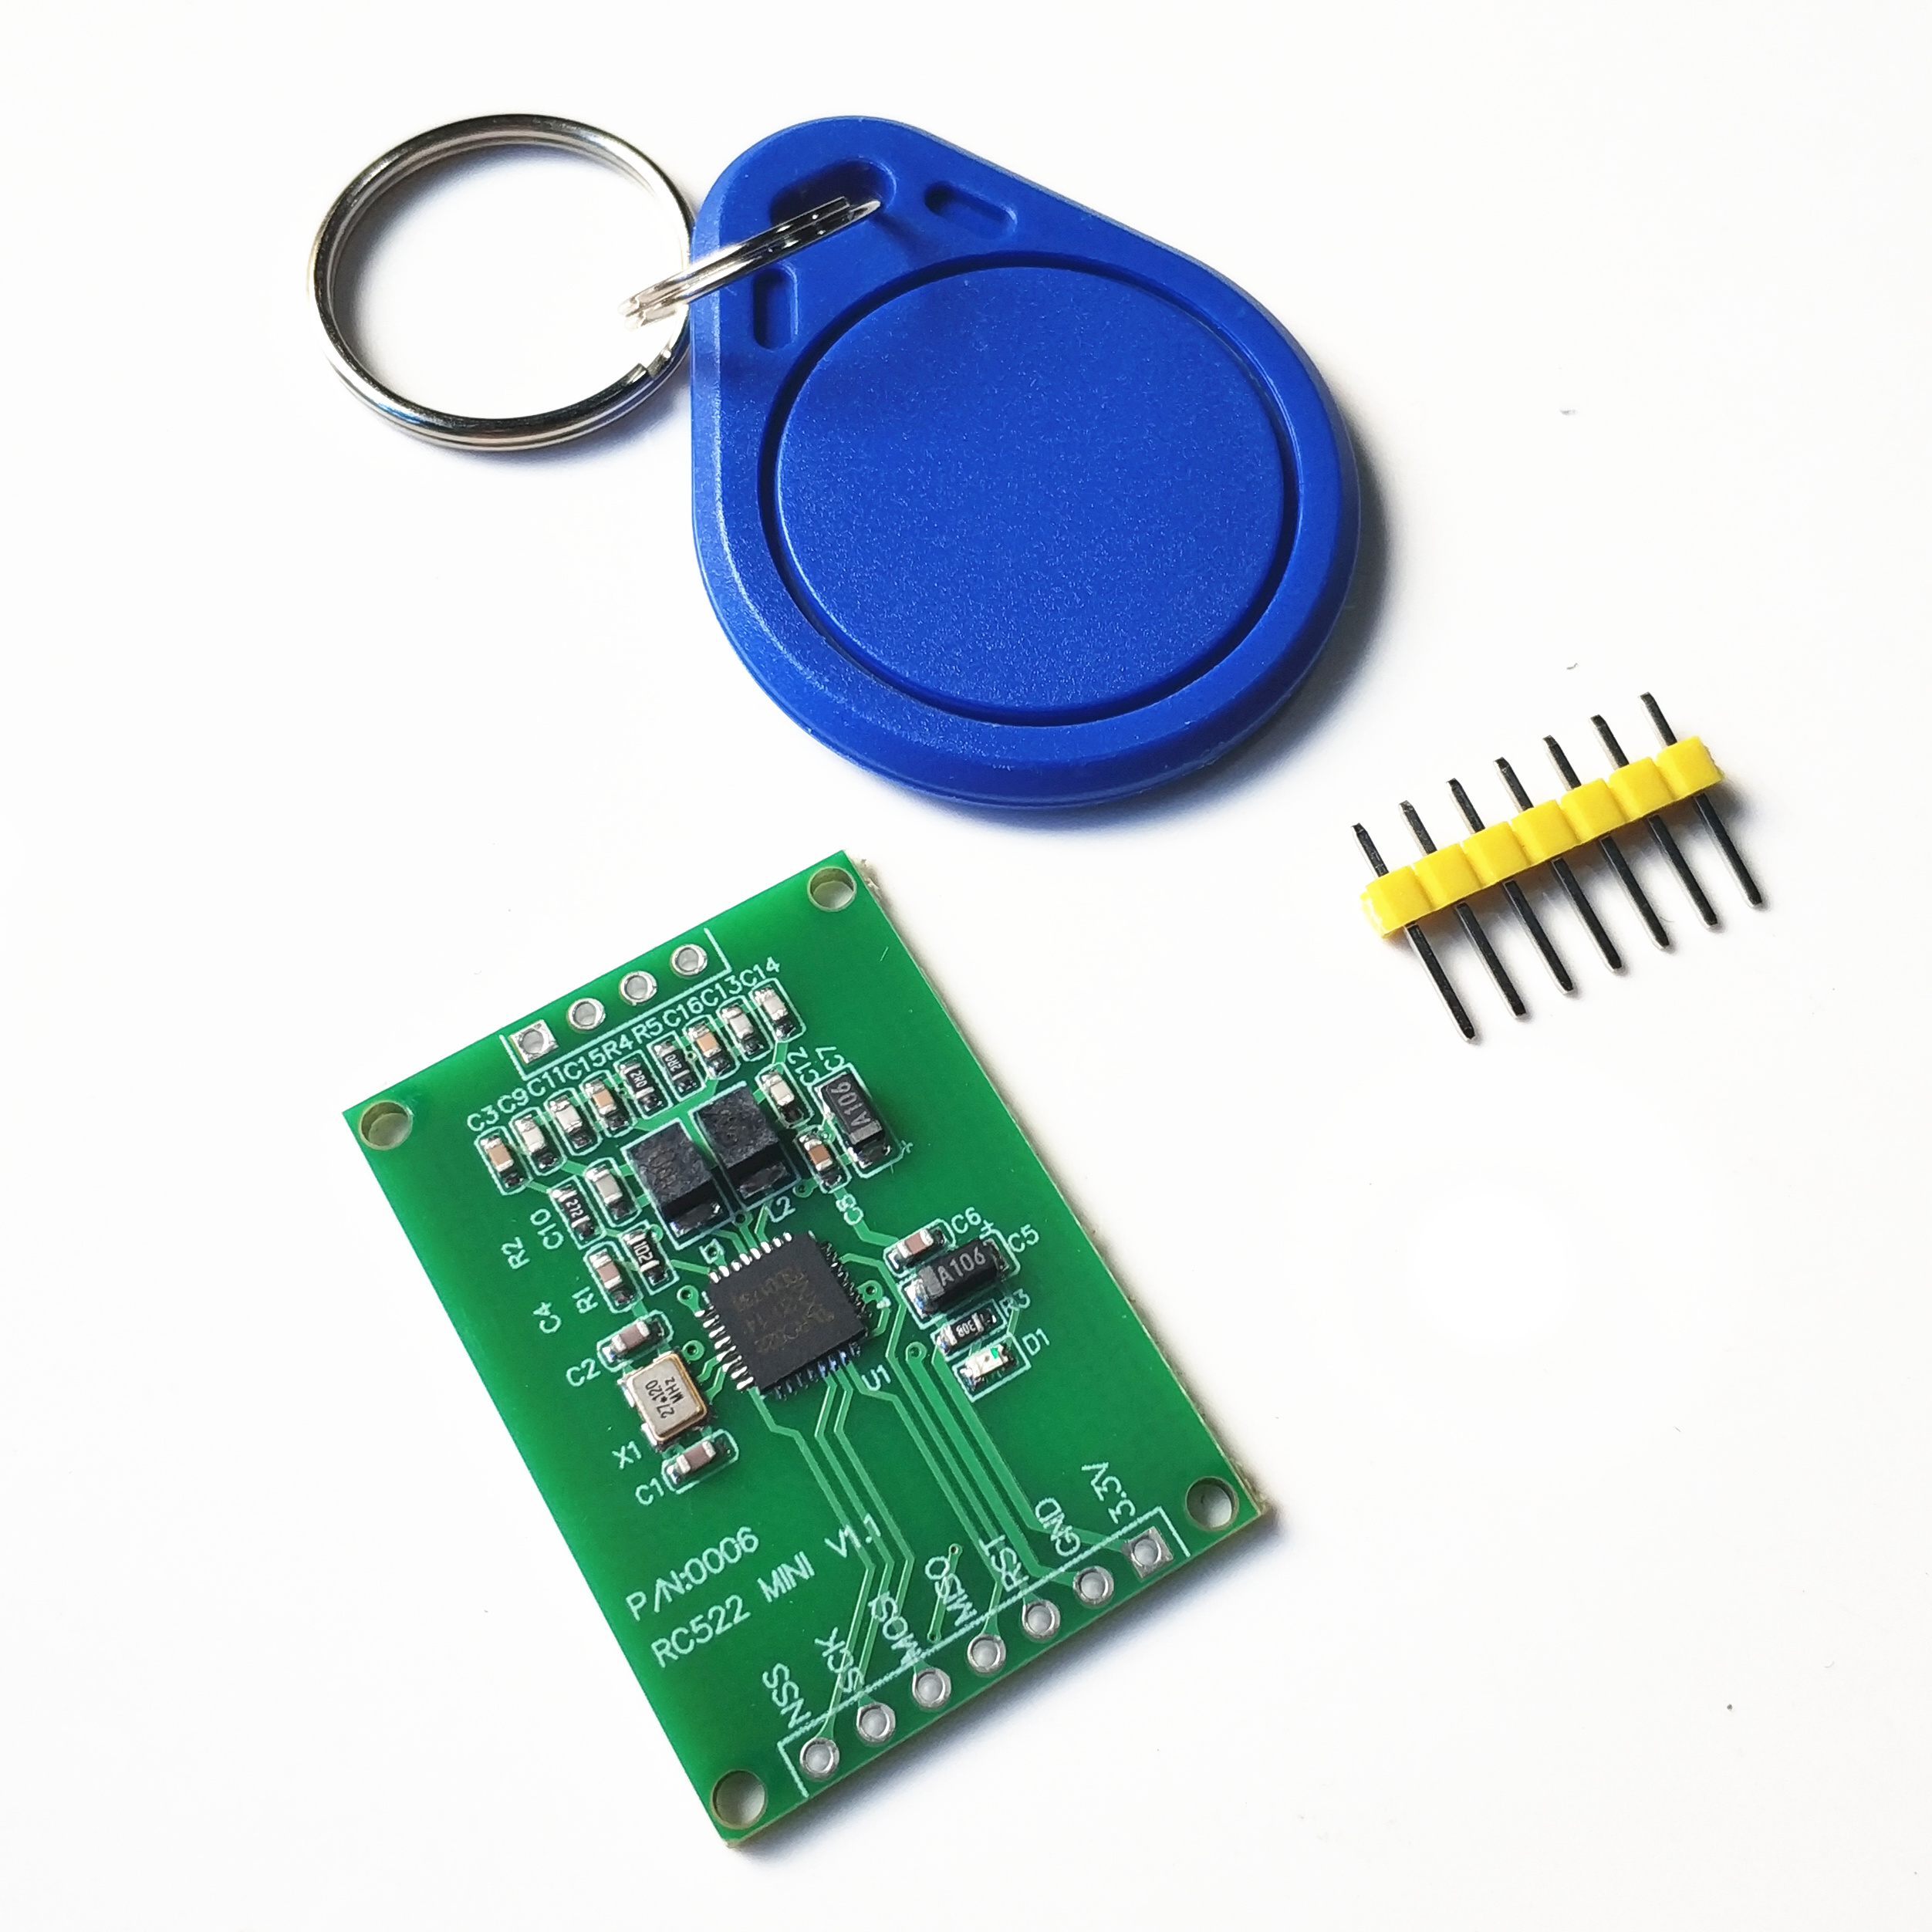 MFRC522 RC522 RFID射频 IC卡感应读写模块 小尺寸迷你版13.56MHZ